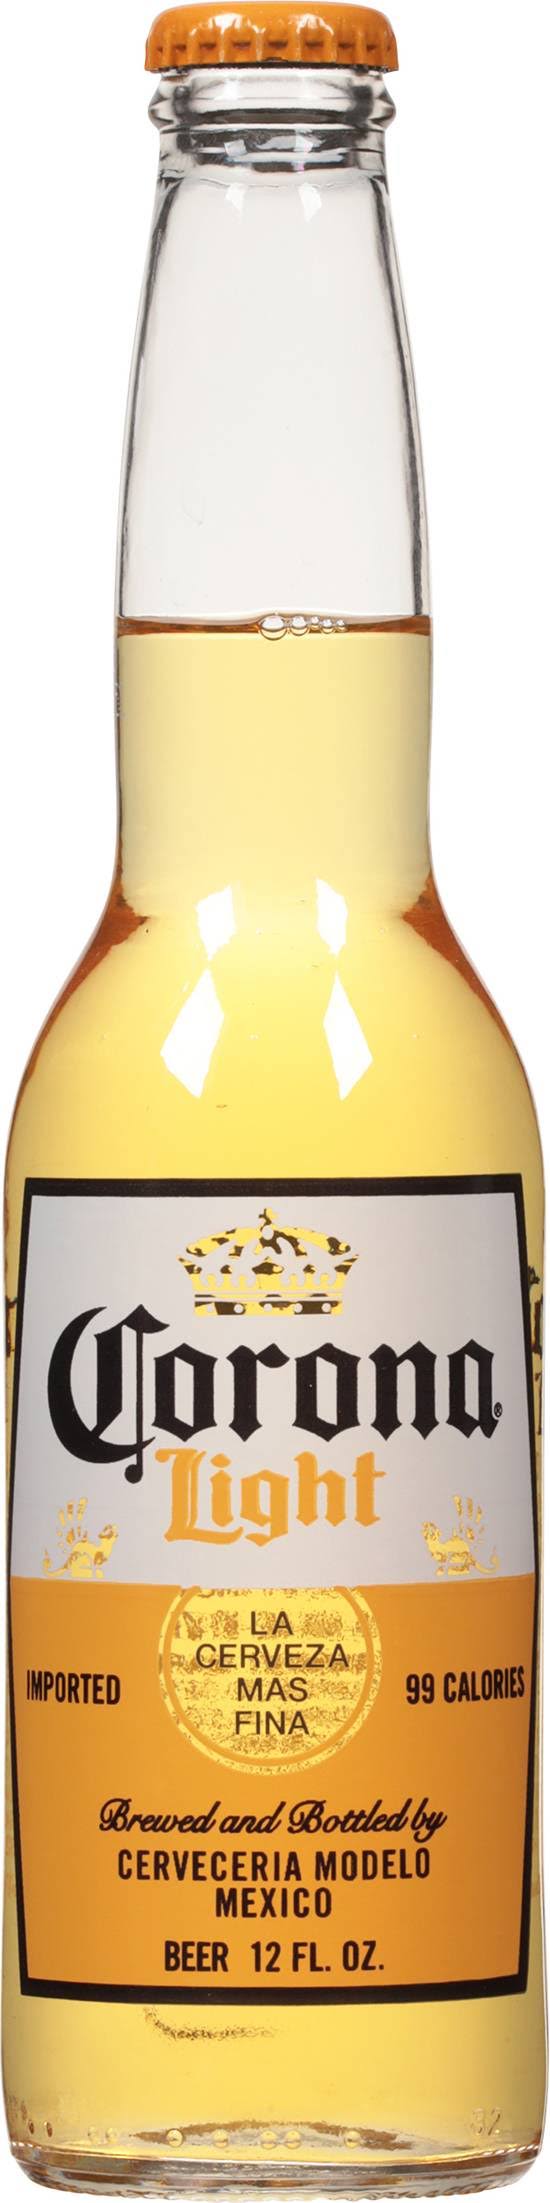 Corona Light Beer - 12 oz Bottle